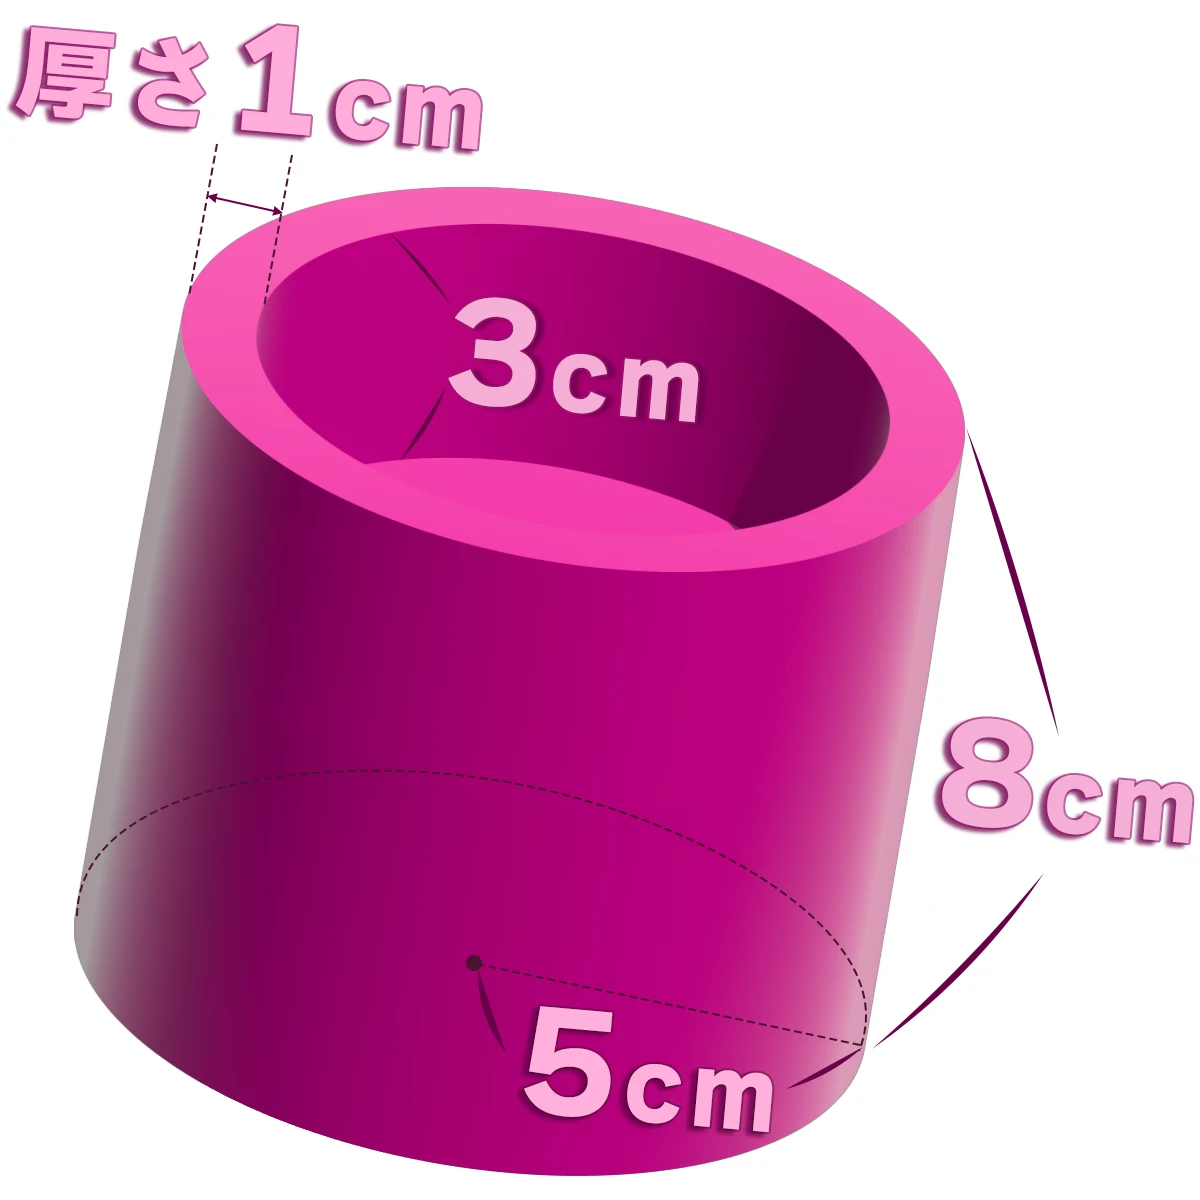 半径5cm、高さ8cmの円柱から、半径4cm、高さ3cmの円柱をくり抜いた立体